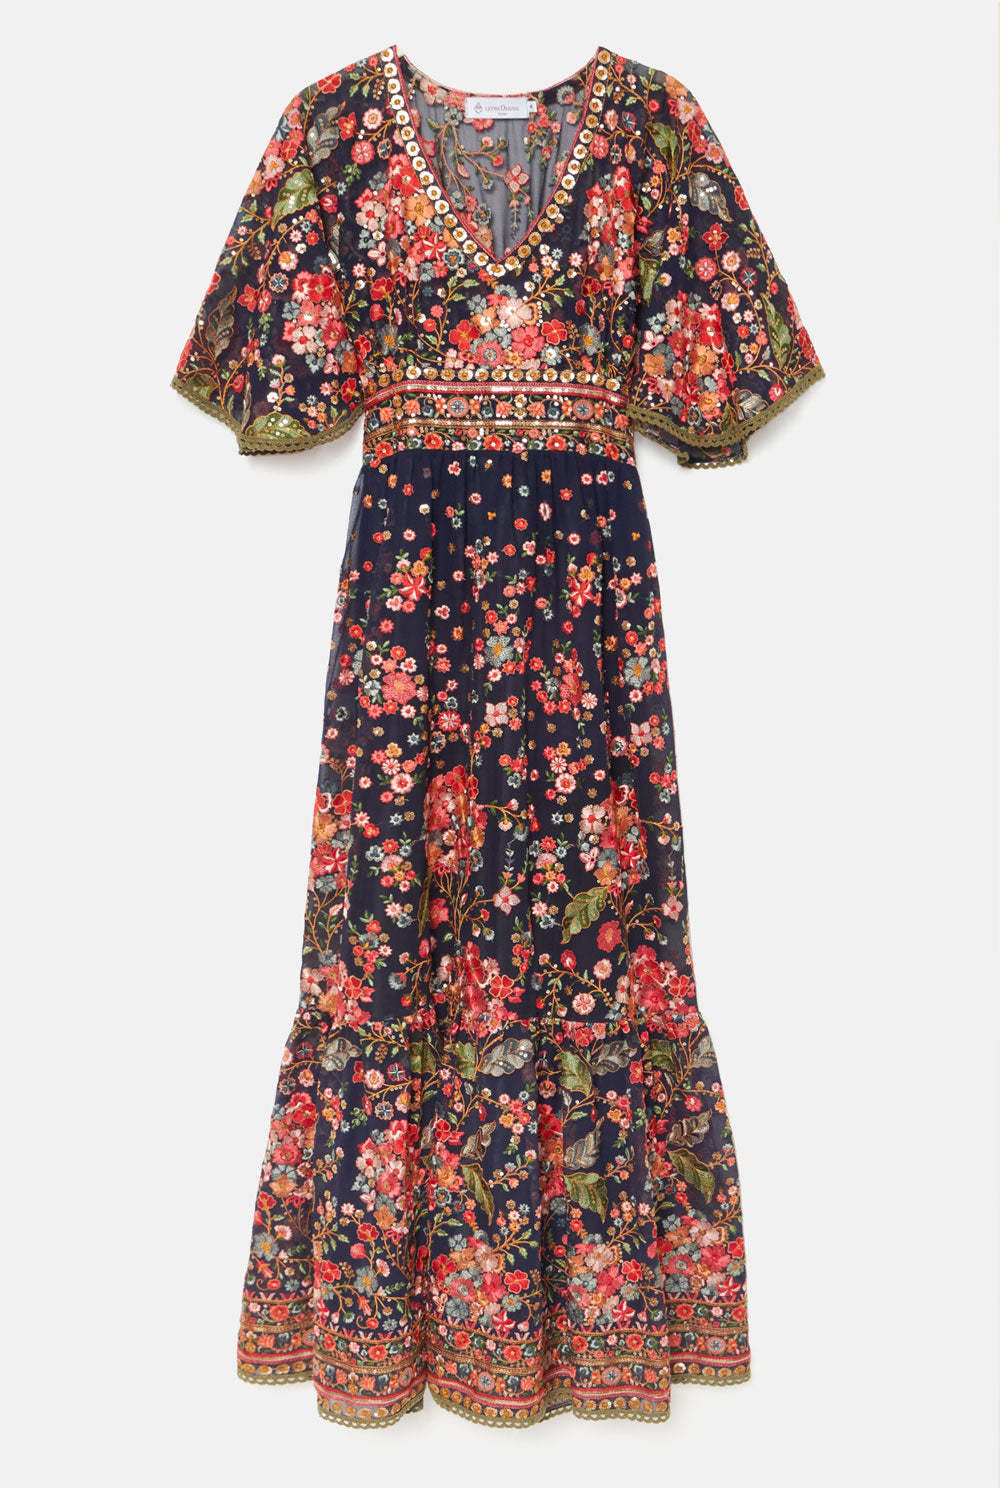 Vestido largo de flores estilo hippy, de Leyre Doueil (495 euros).